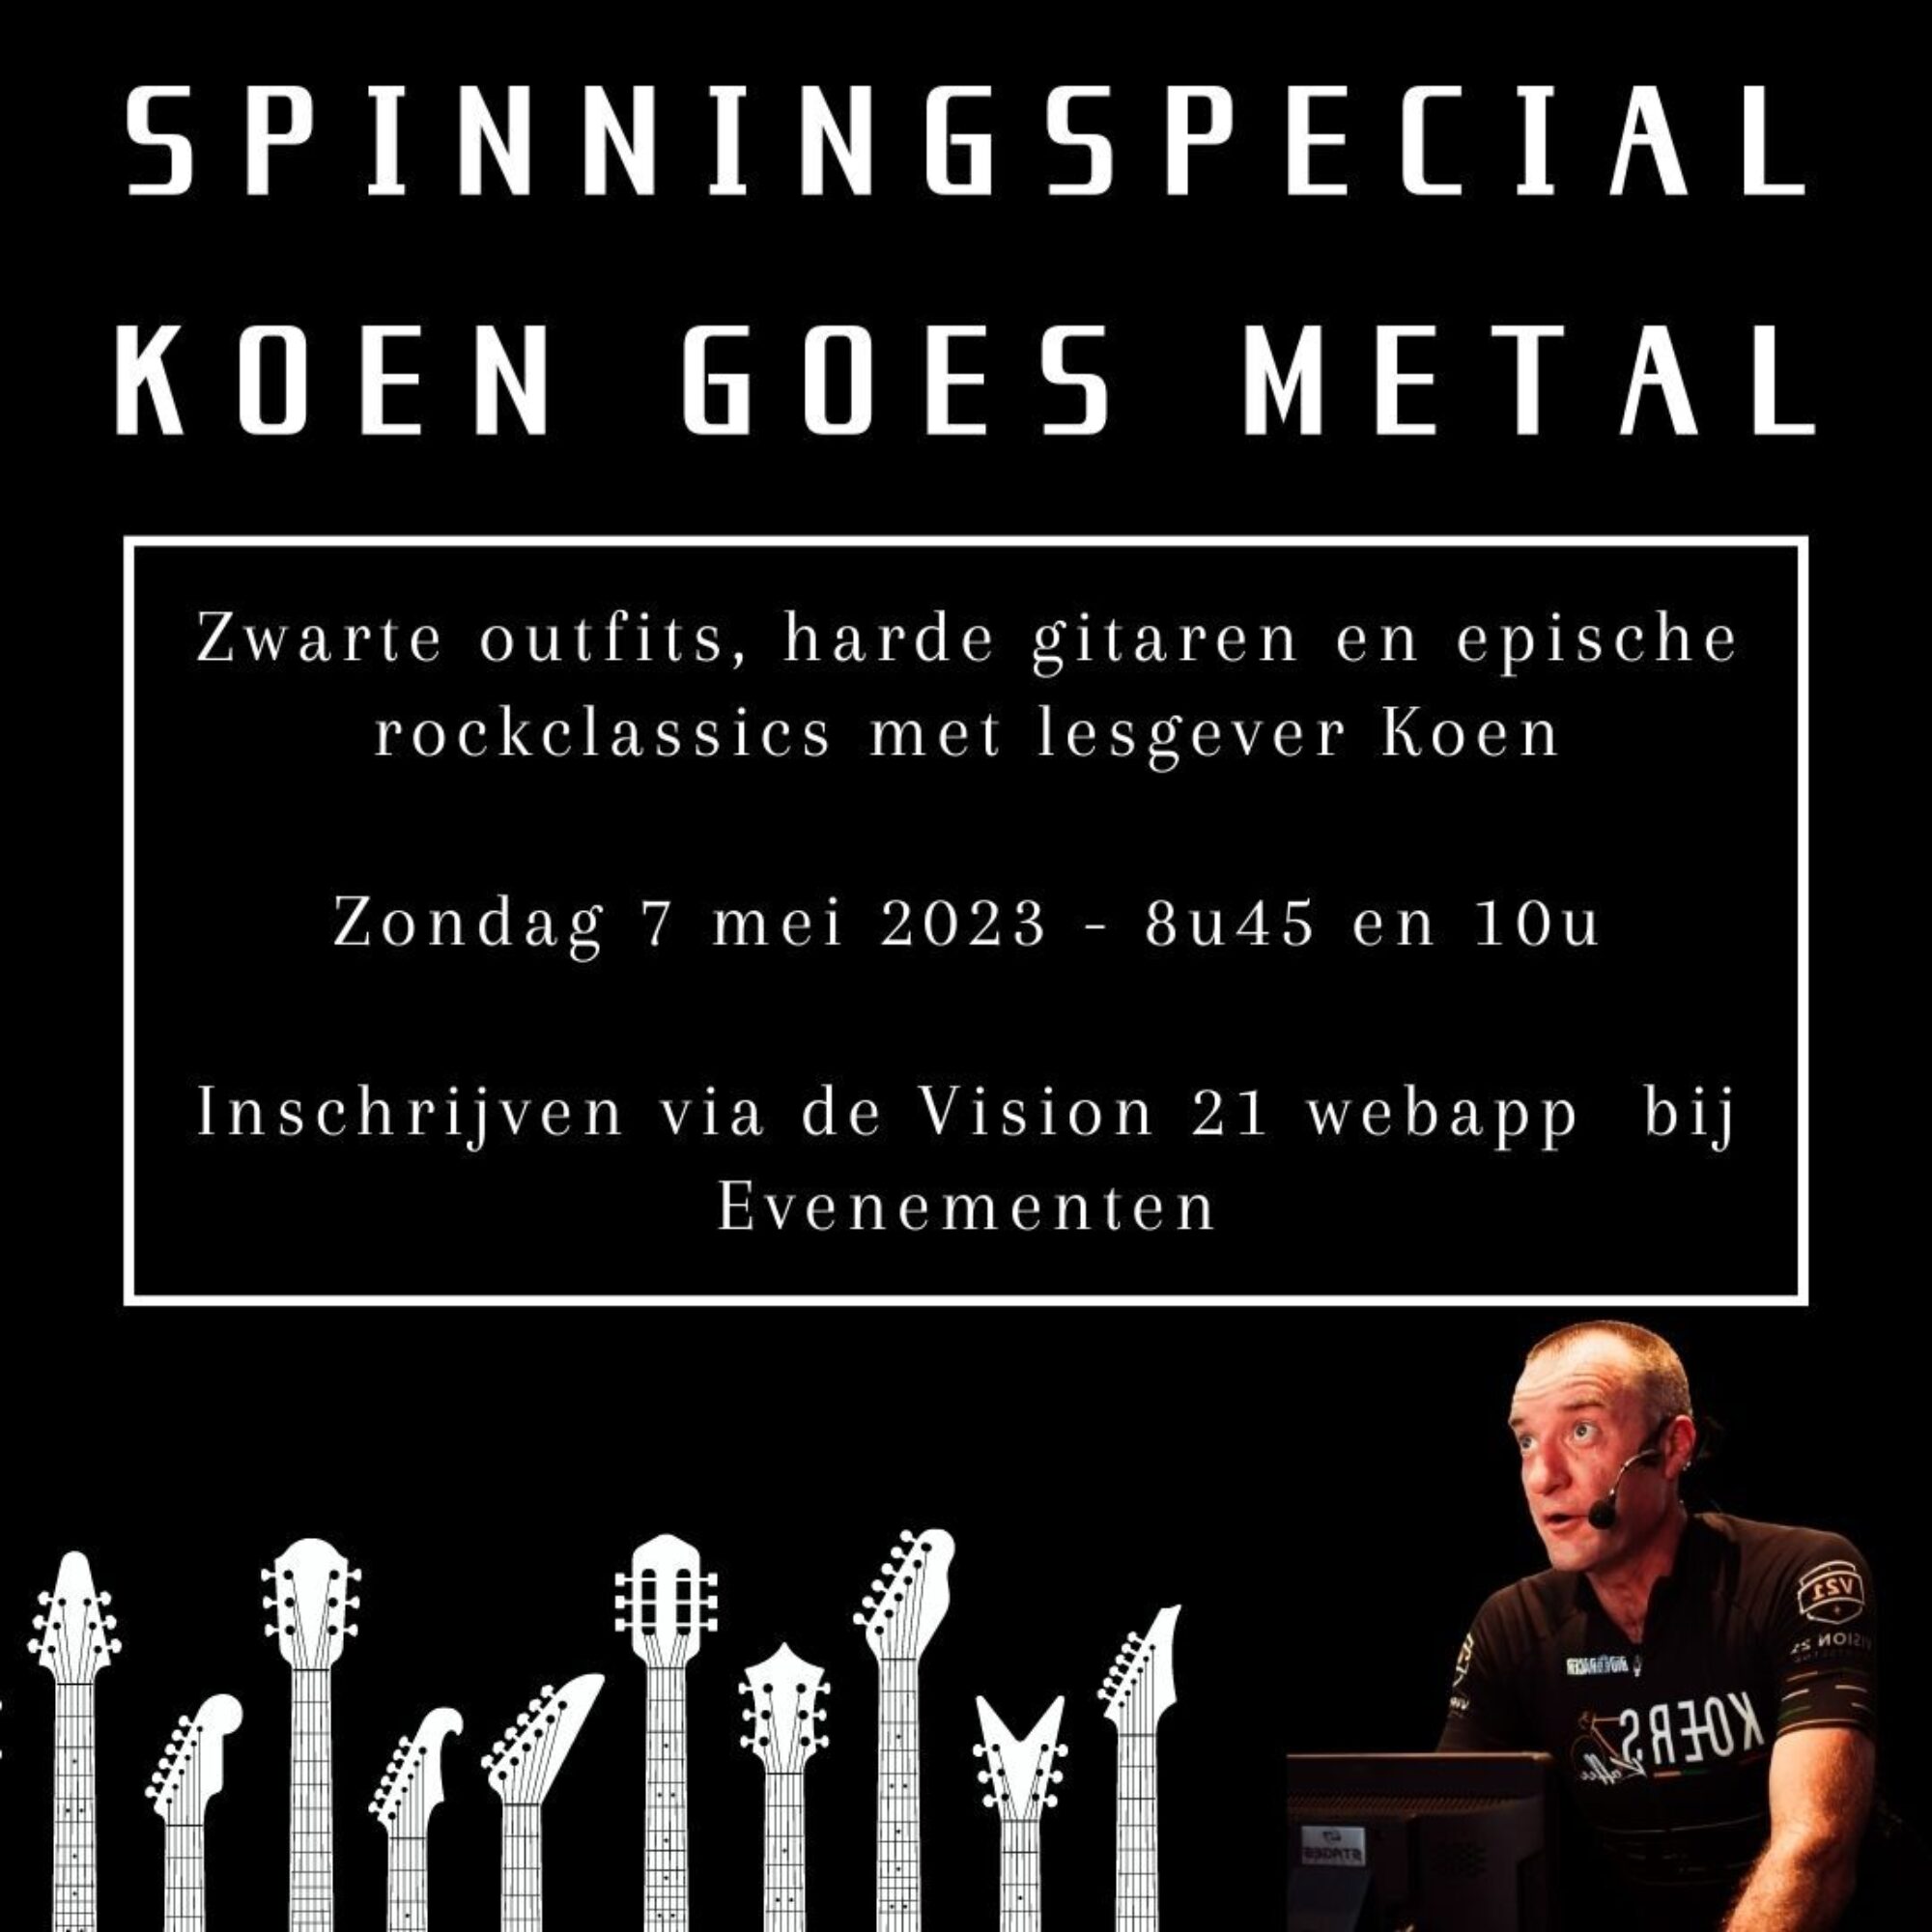 Spinningspecial Koen goes metal